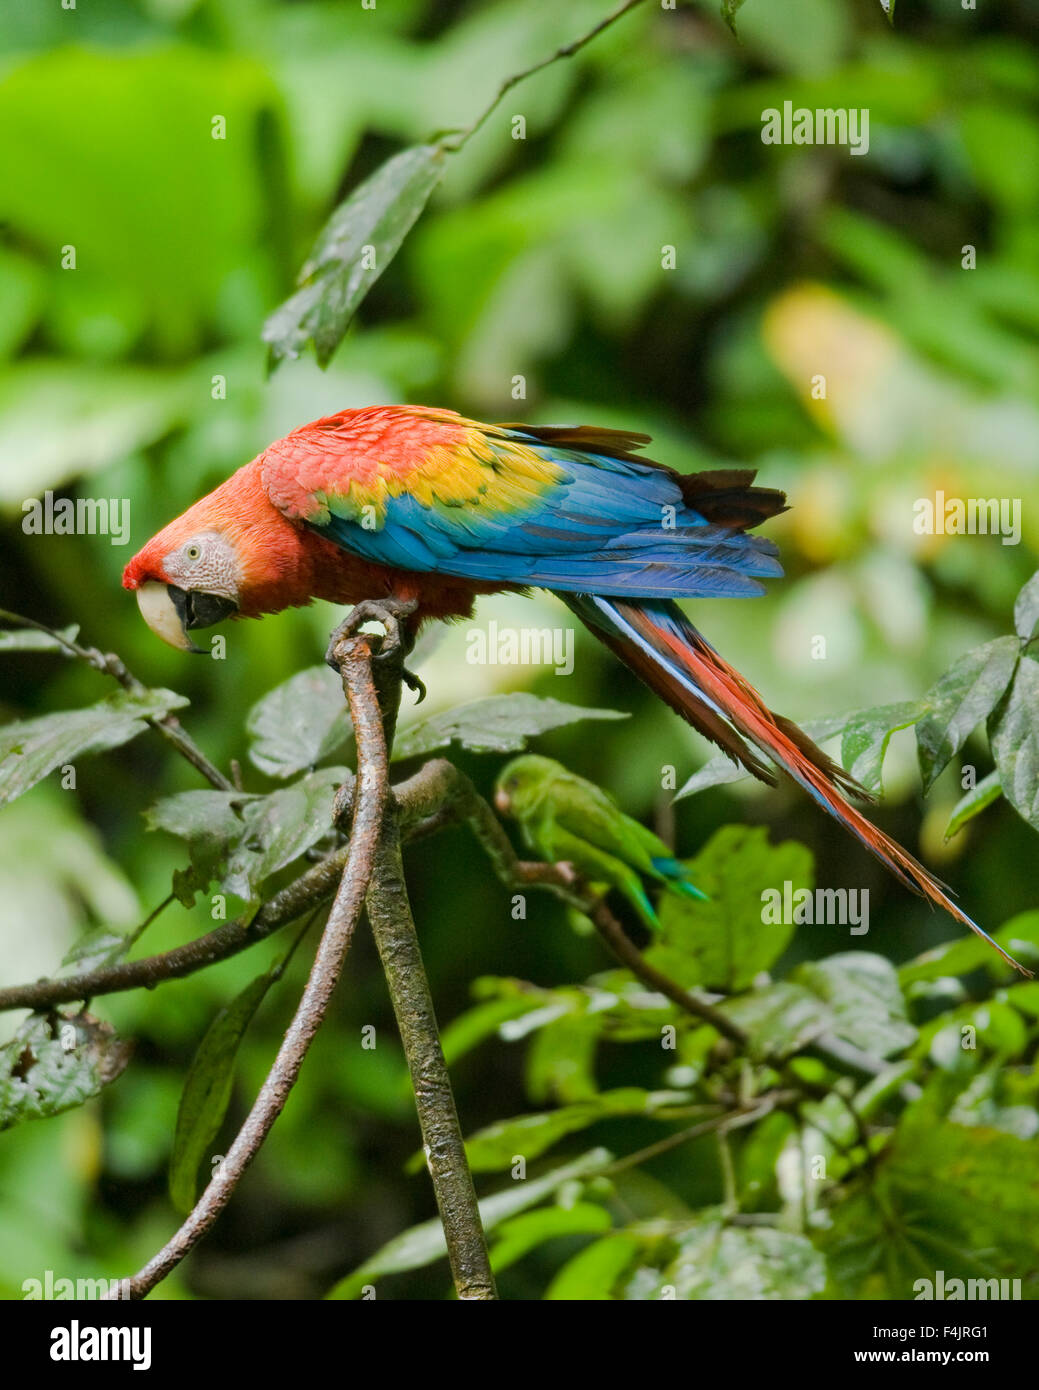 Nord grand oiseau de la direction générale de l'image couleur bleu dense jour Equateur feuillage vert vert jungle horizontale multicolore aucun peuple Banque D'Images